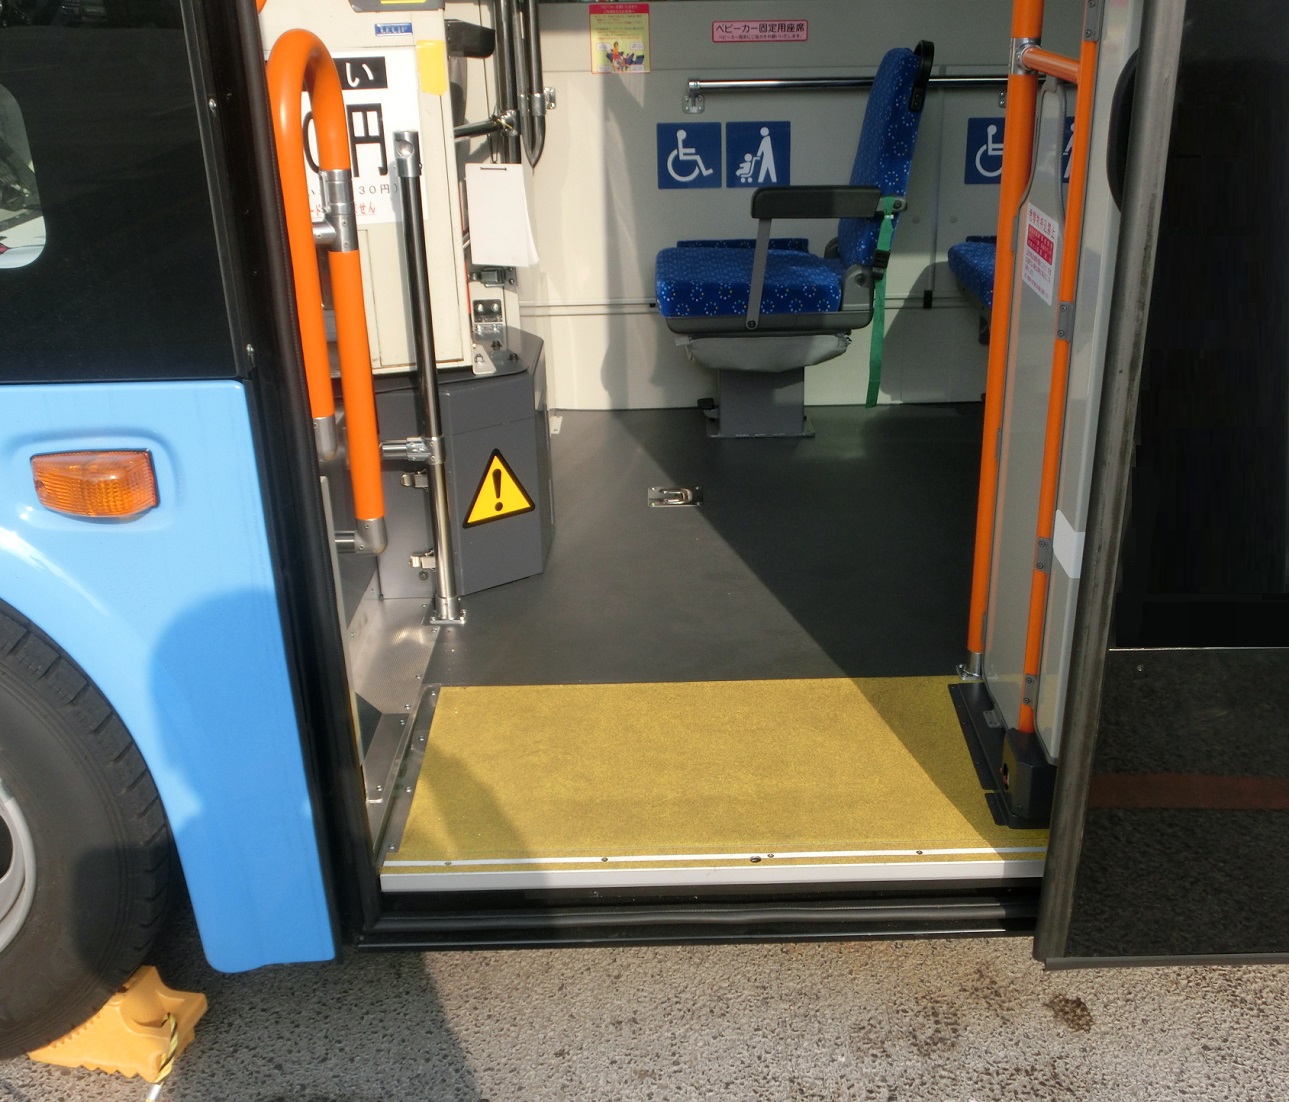 新しいバス車両の出入口がノンステップ仕様になっていることが分かる写真